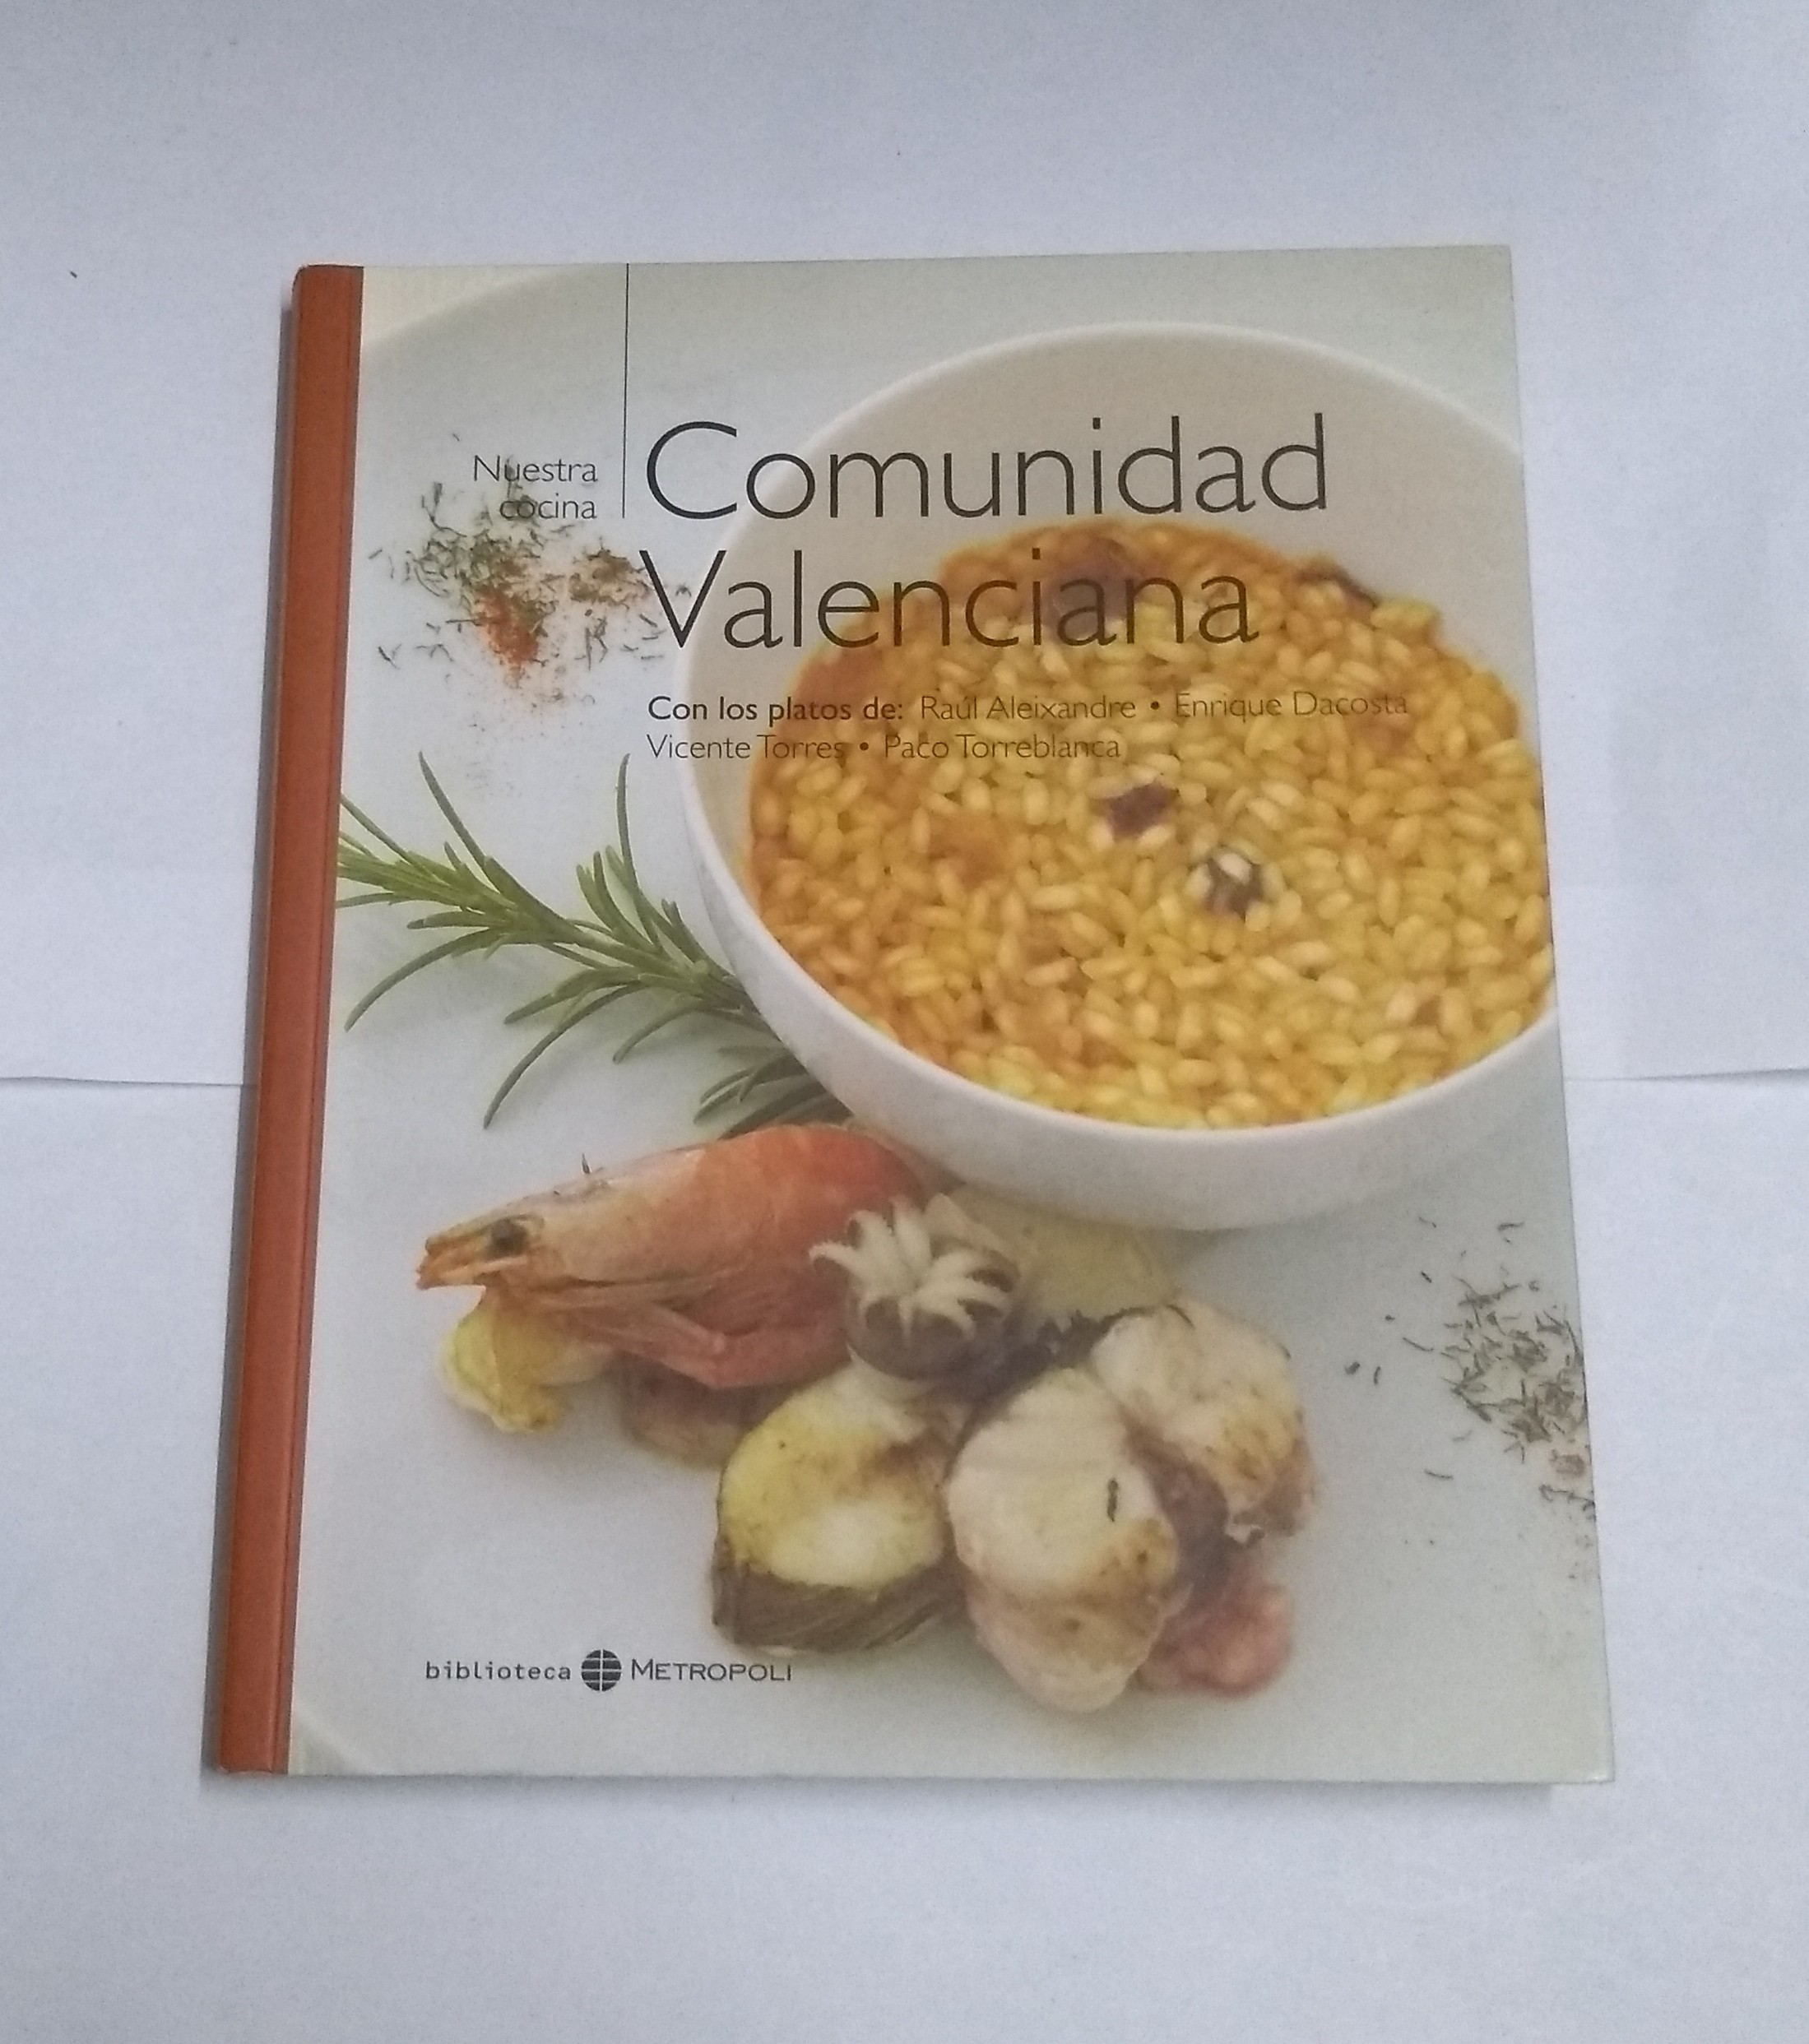 Nuestra cocina: Comunidad Valenciana